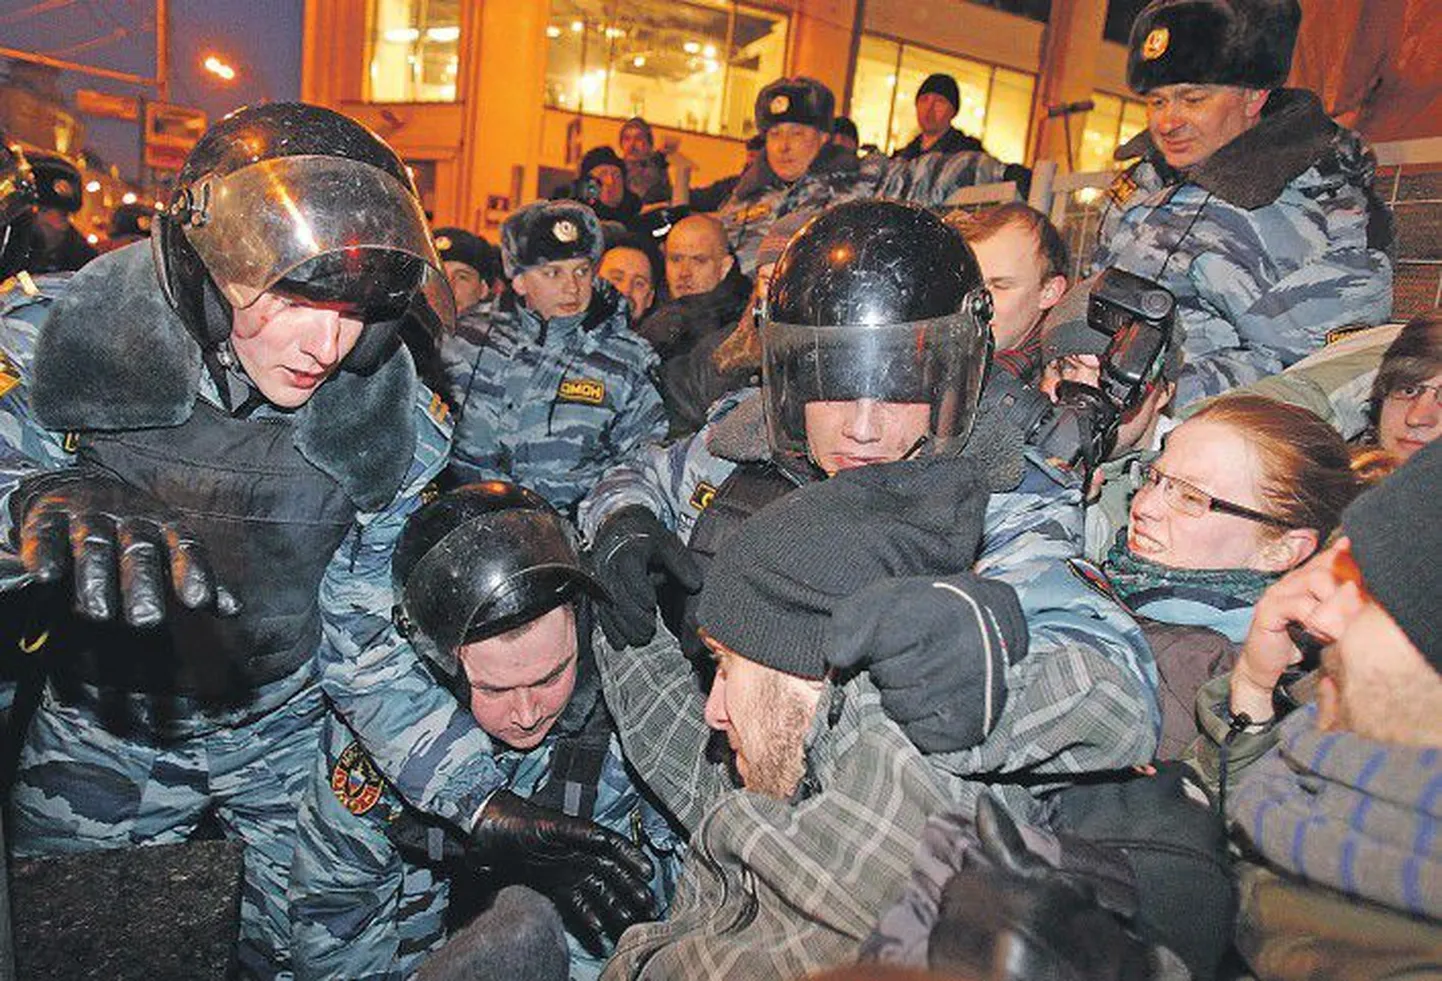 Вчера по завершении санкционированного митинга «За честные выборы» на Пушкинской площади в Москве омоновцы стали разгонять не захотевших расходиться участников протестной акции, около 250 человек были задержаны.